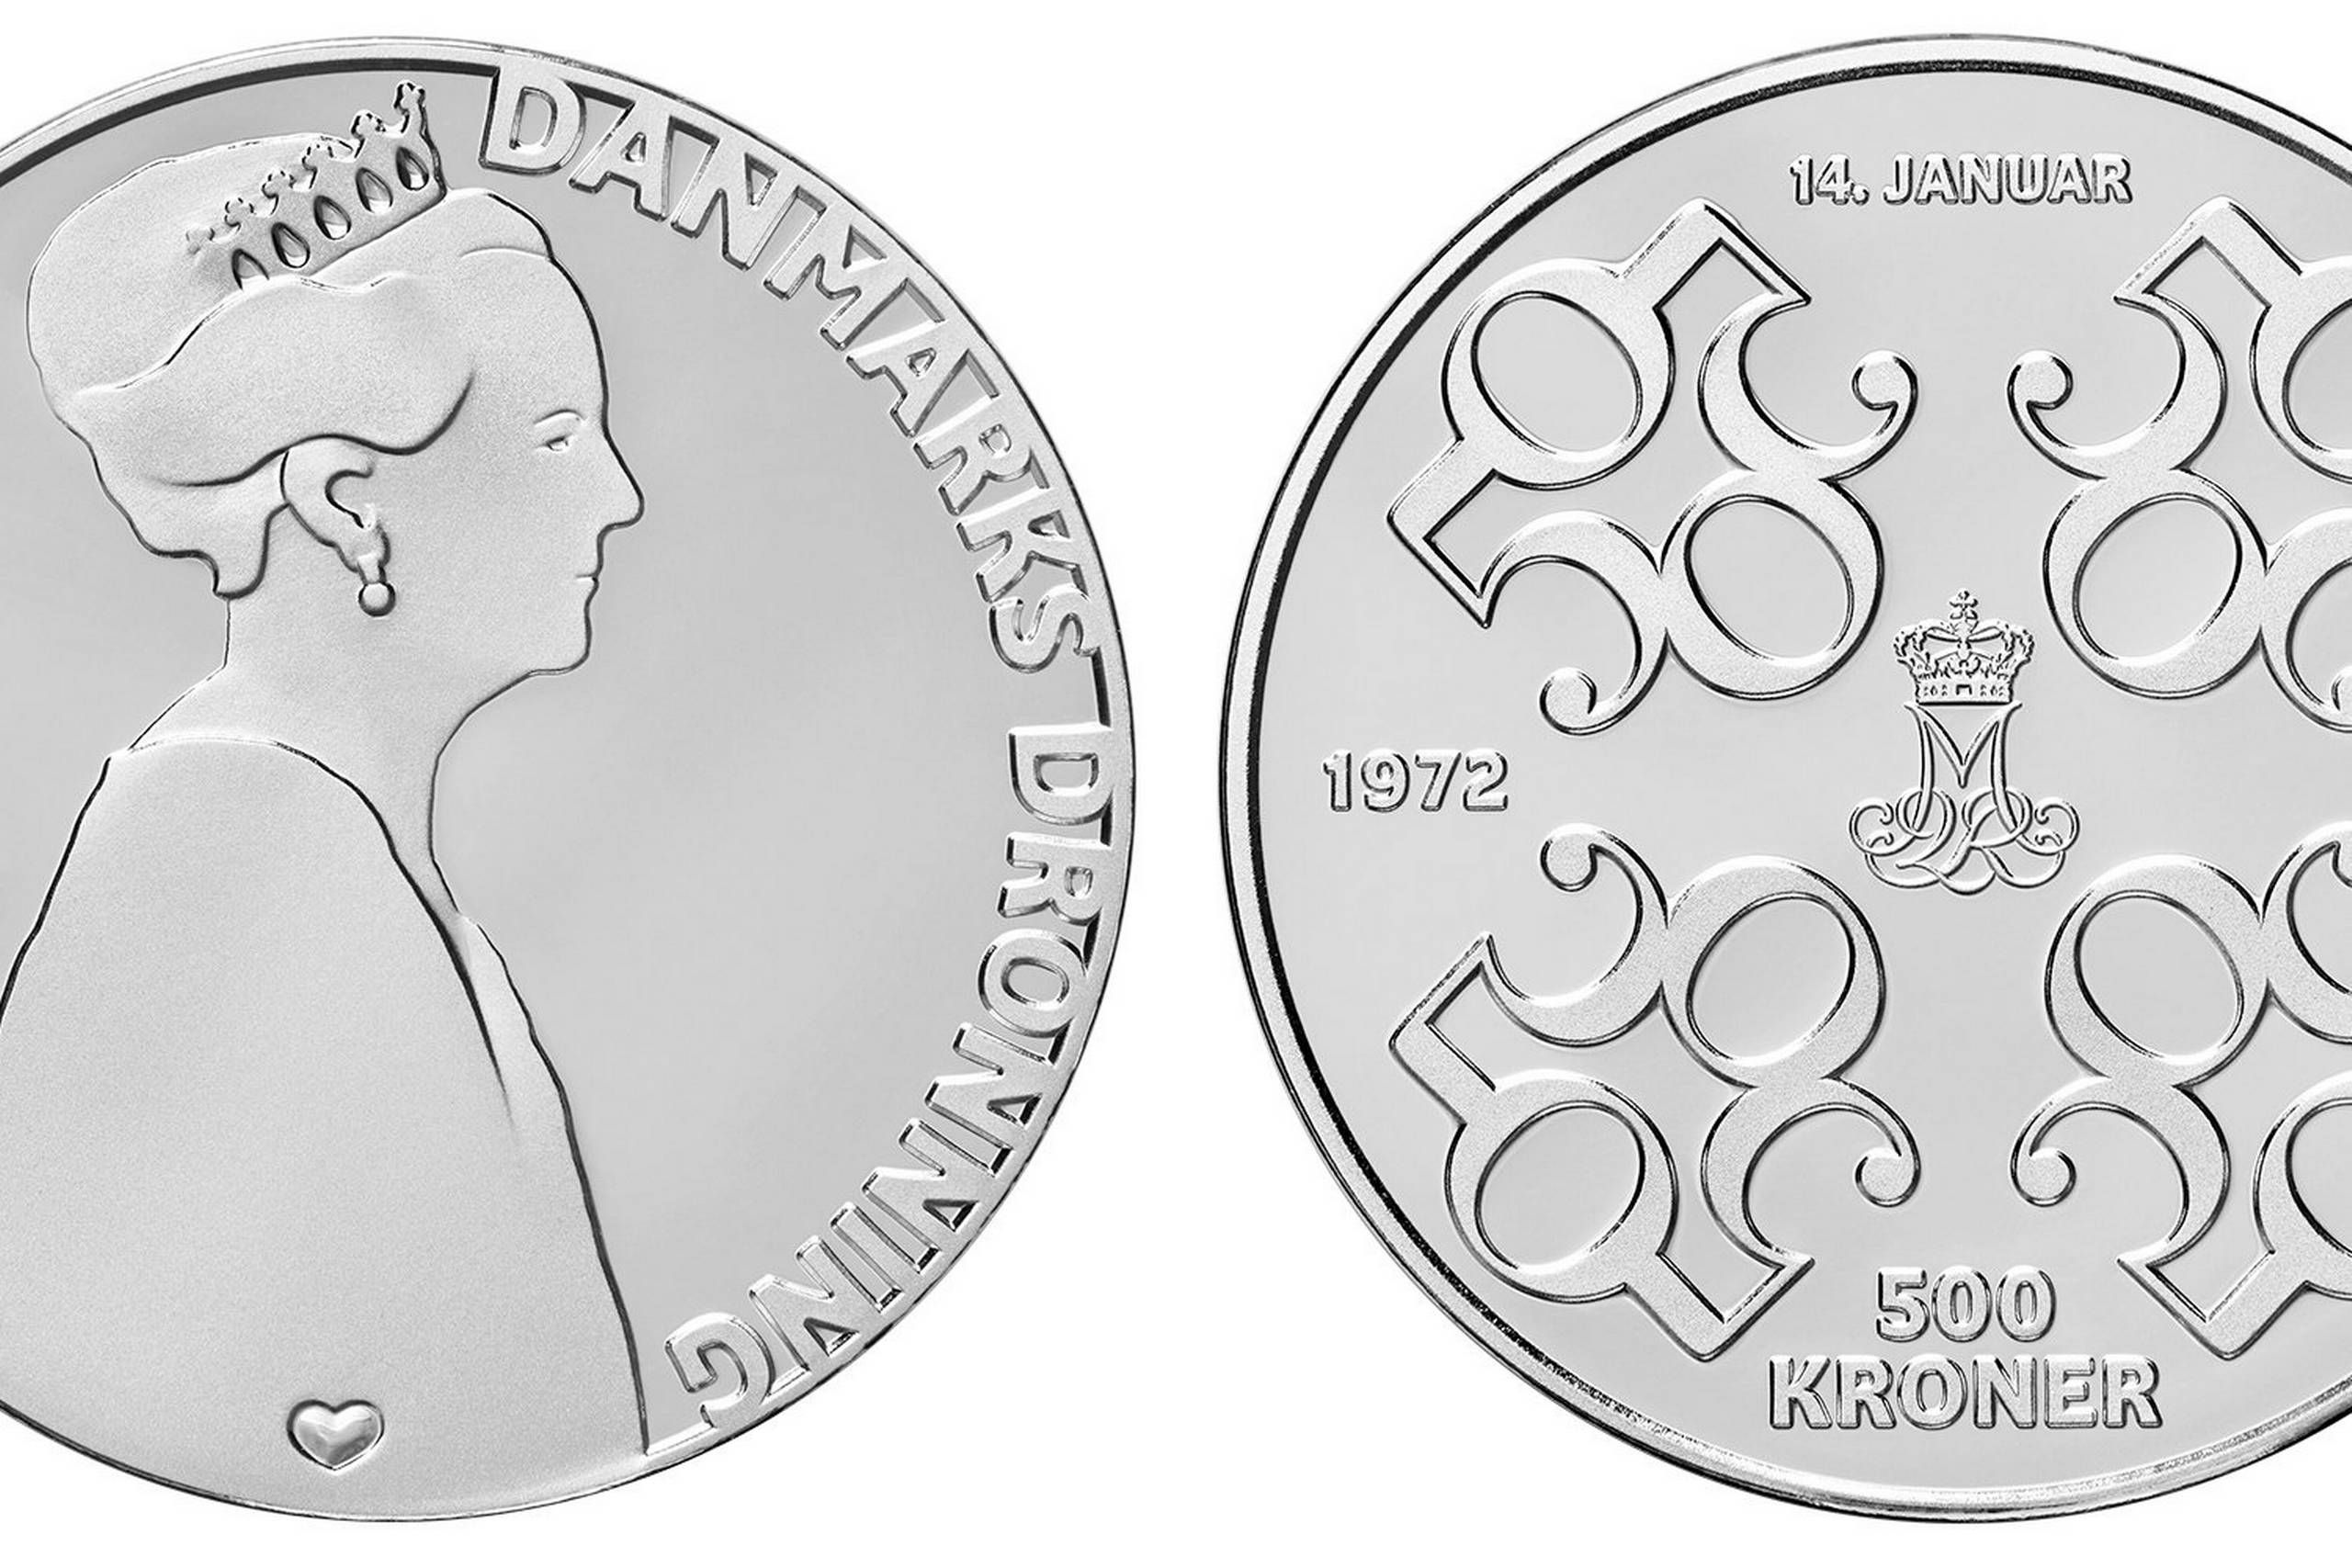 Ved daggry genopretning Snor Dronningens 50-års regeringsjubilæum markeres med ny mønt